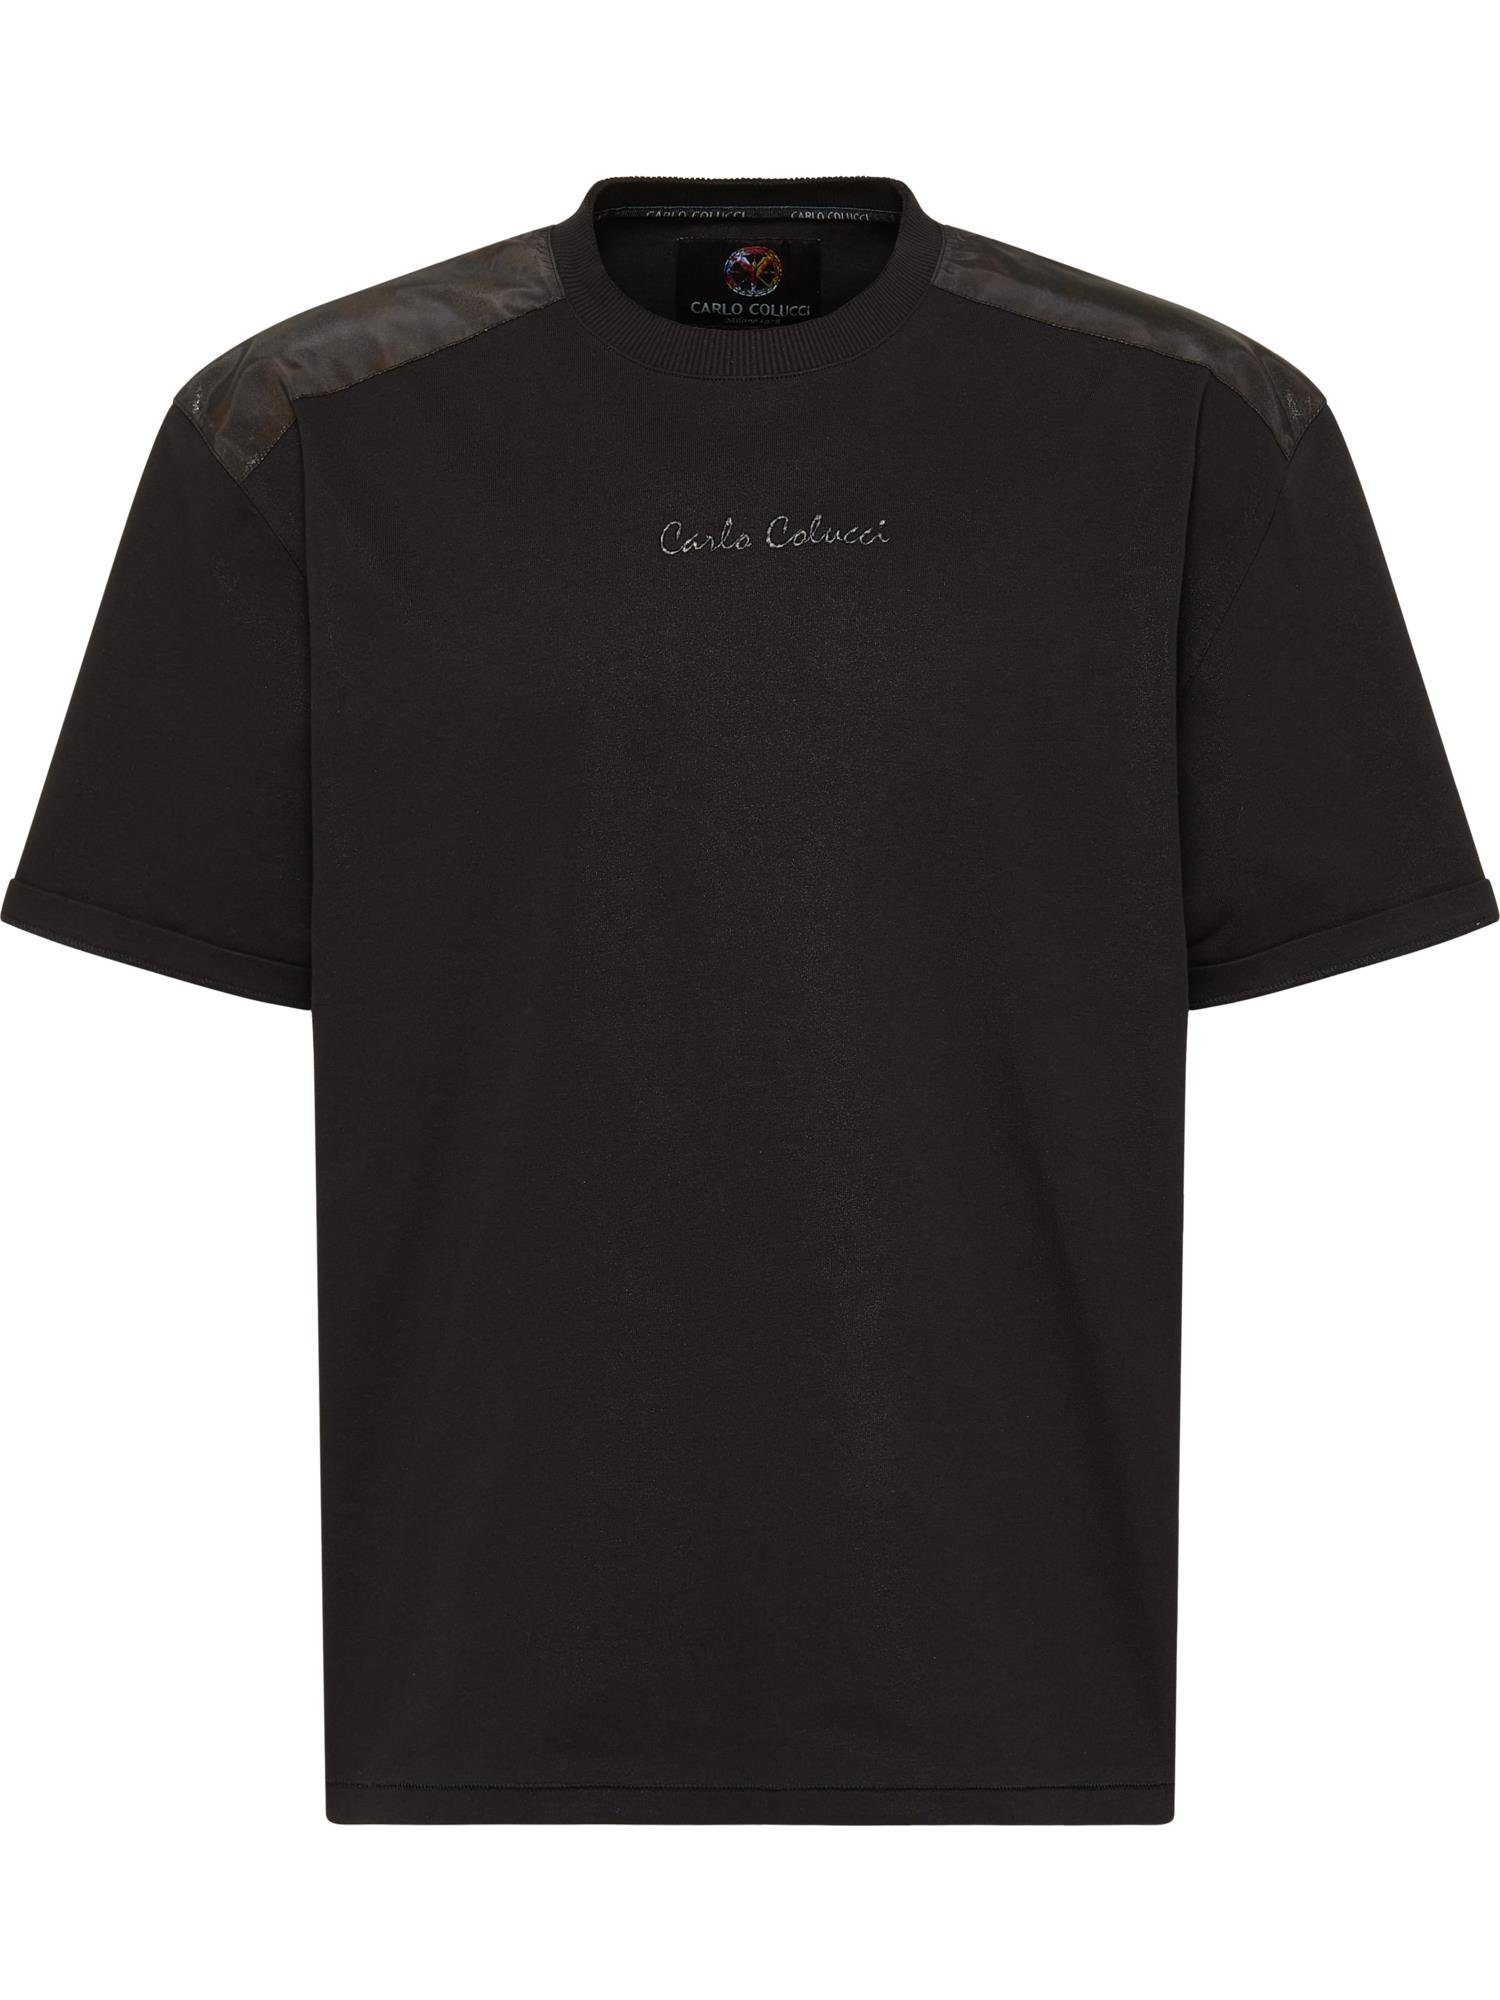 COLUCCI T-Shirt Schwarz CARLO Danelon